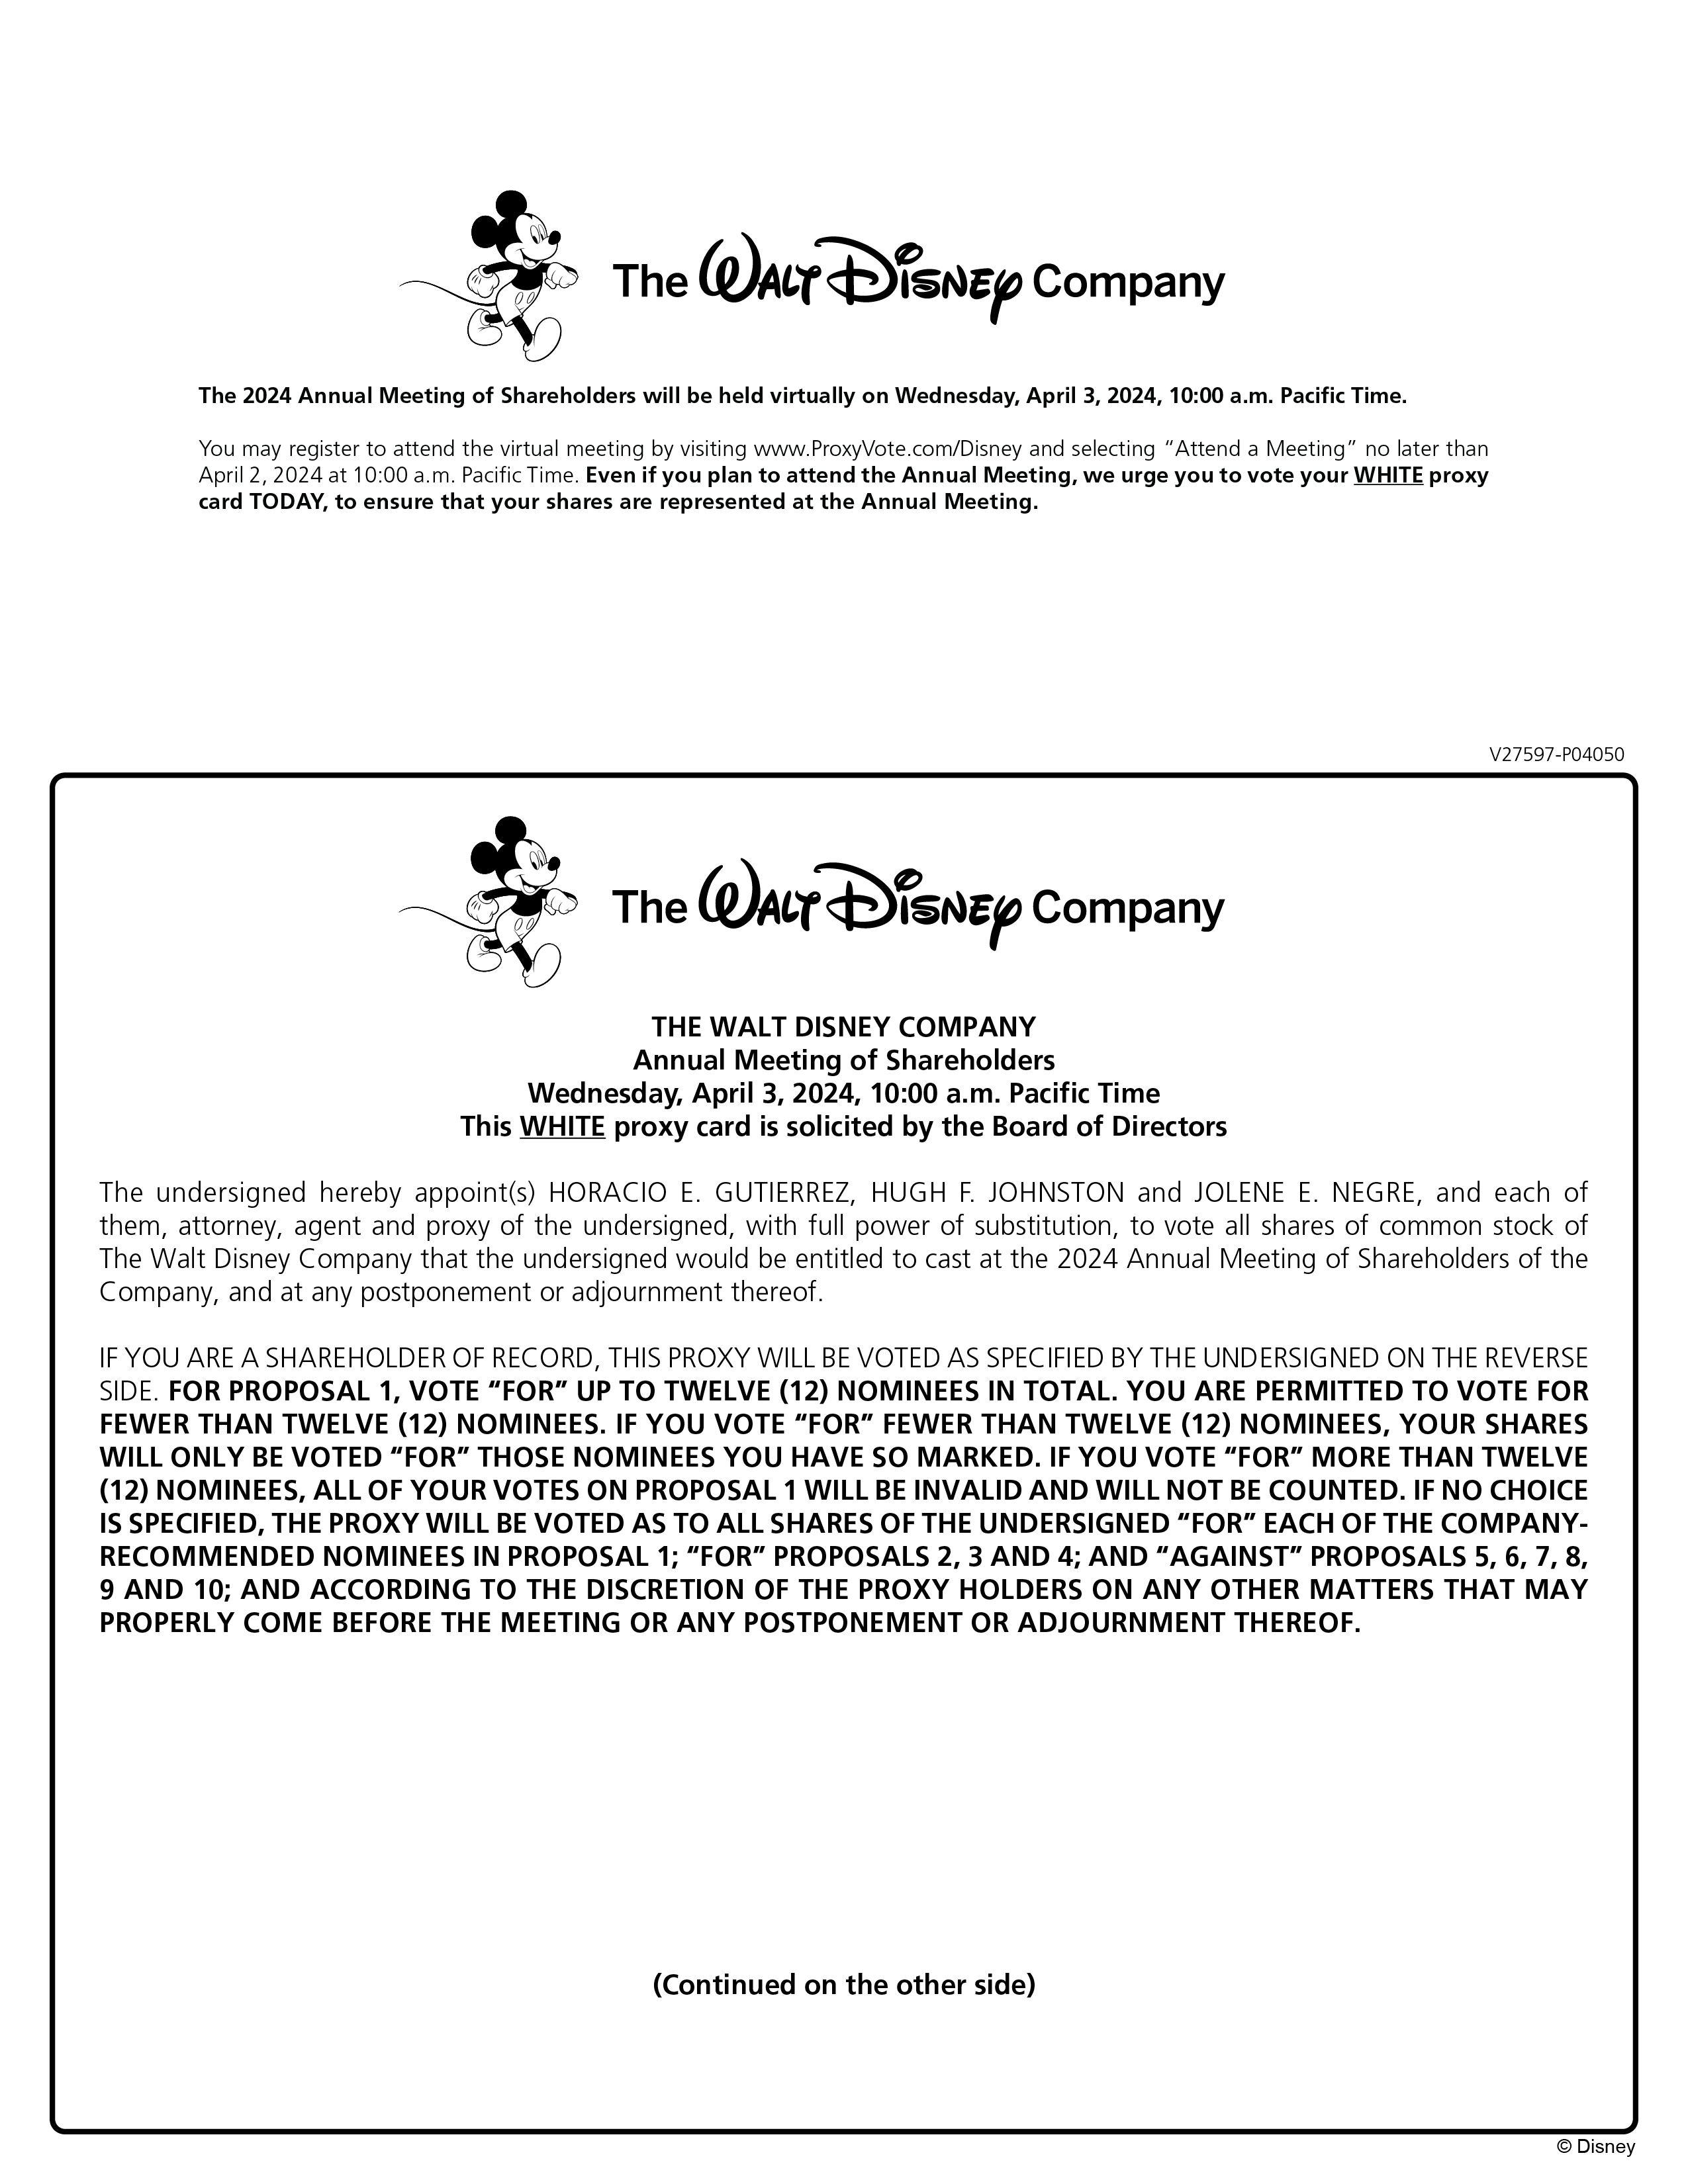 DisneyProxyCard-02.jpg